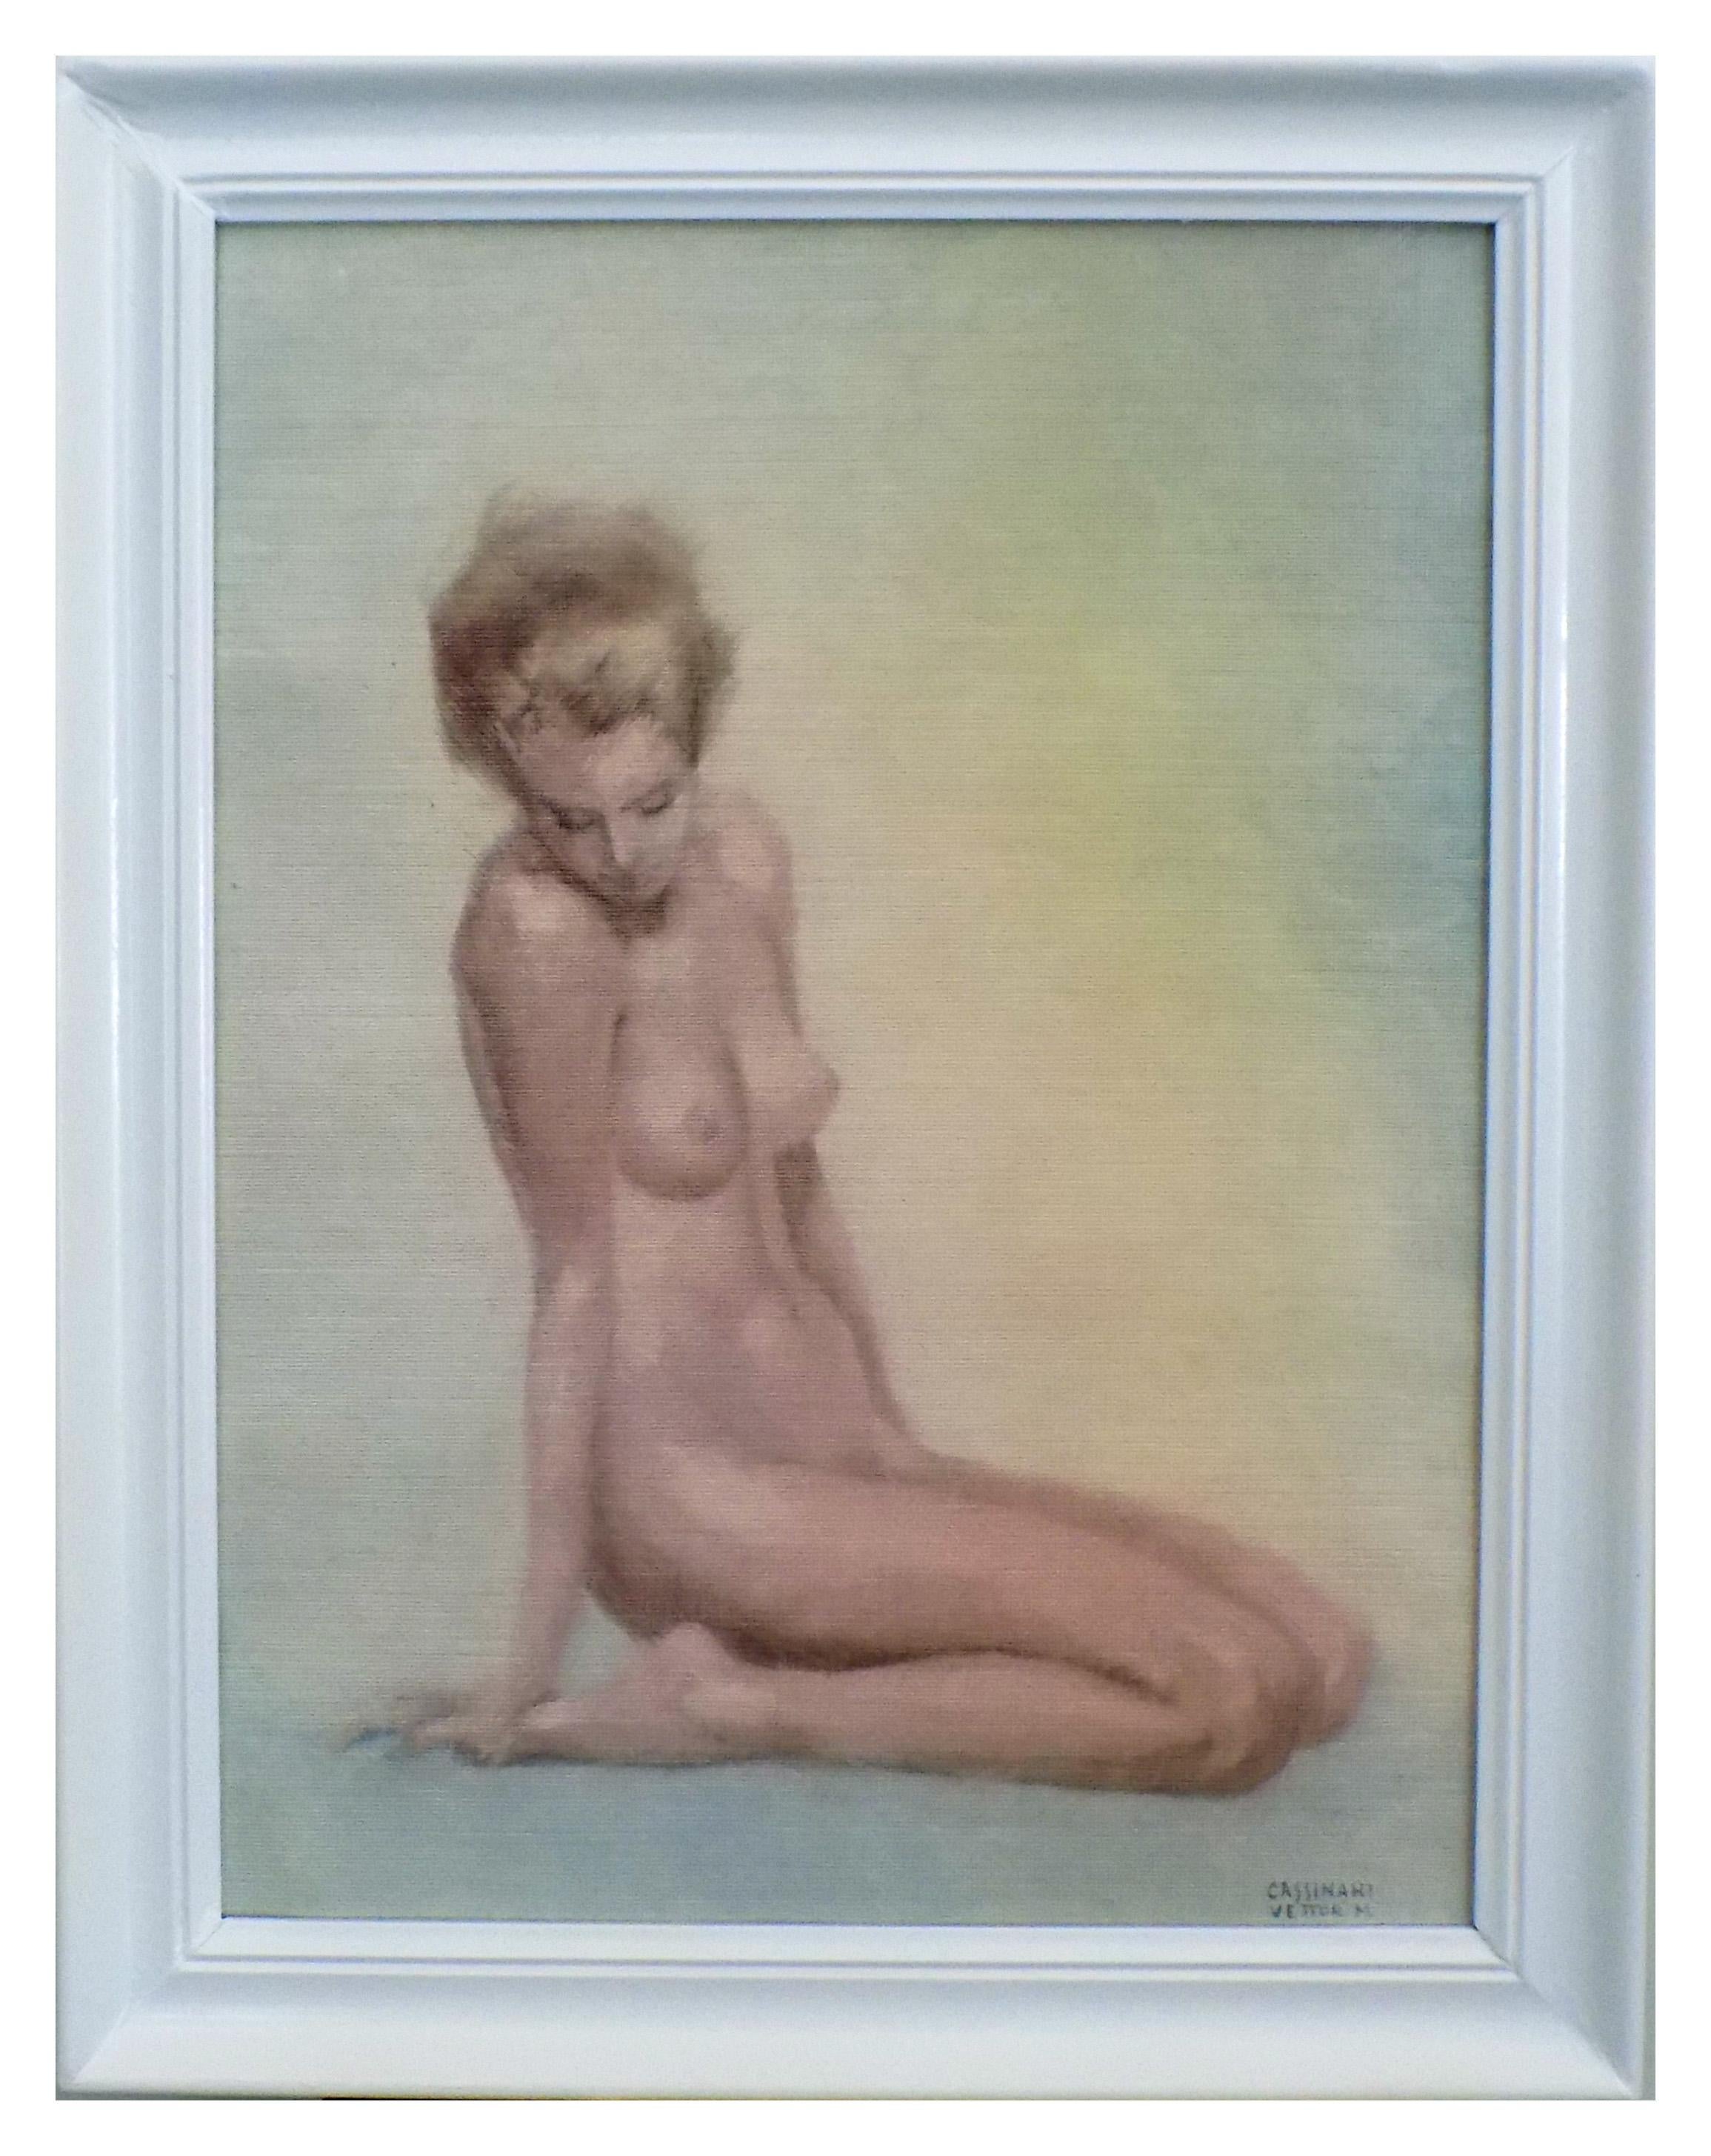 Nude Print Marcello Cassinari Vettor - WOMAN'S NUDE - Impression giclée sur toile